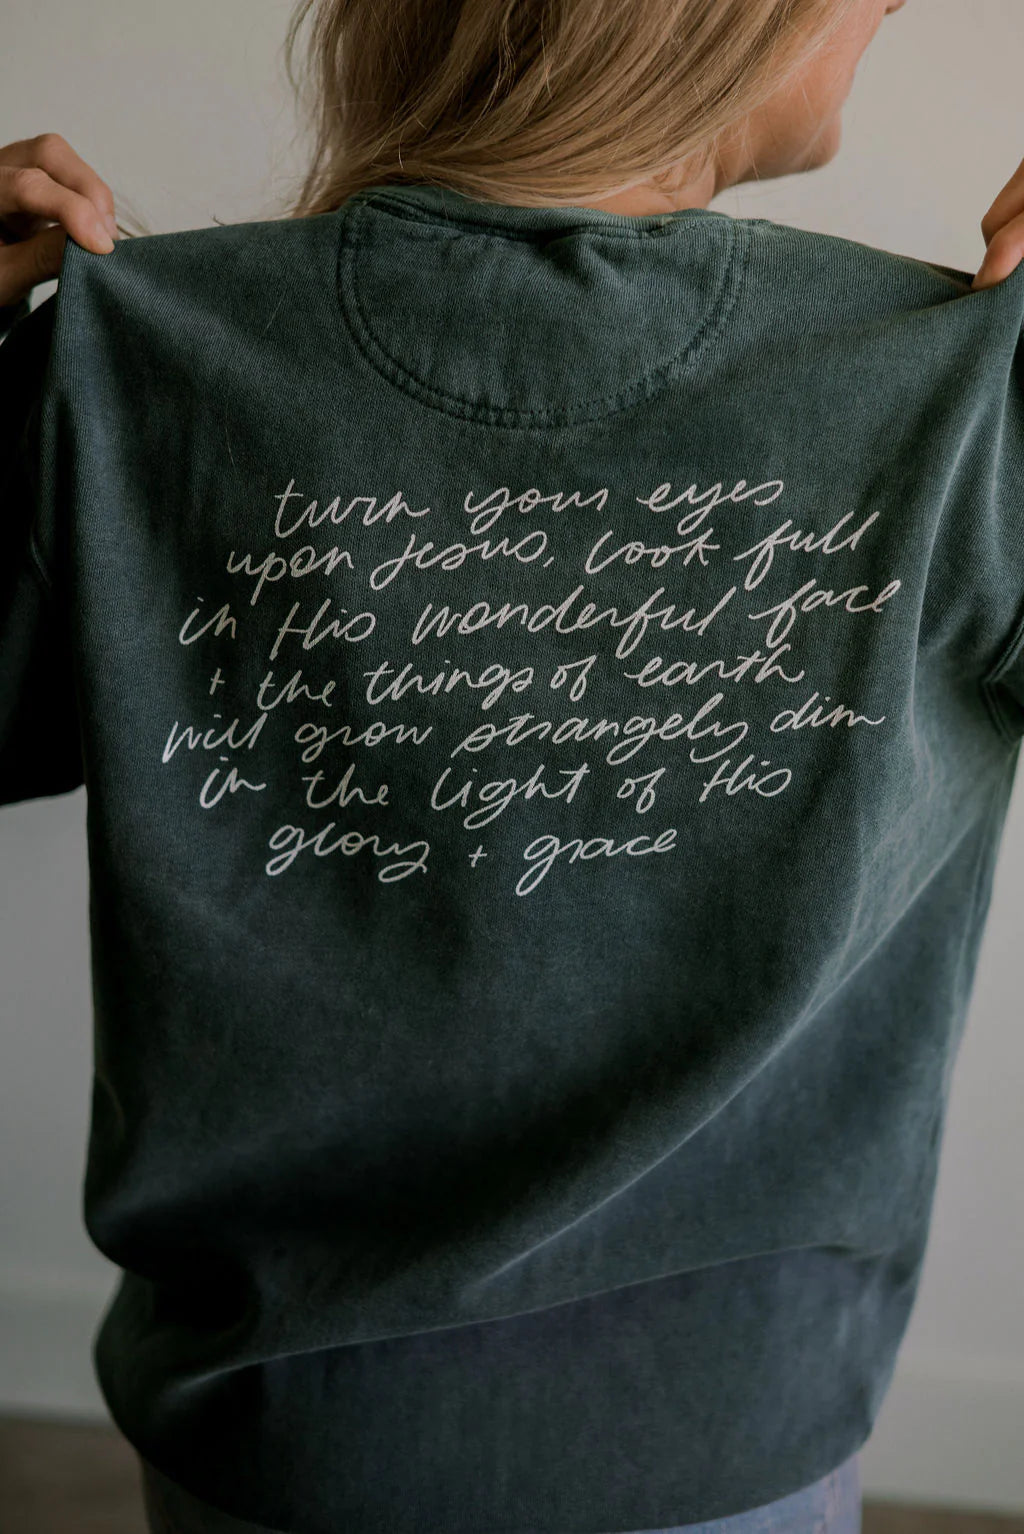 Glory + Grace Spruce Sweatshirt